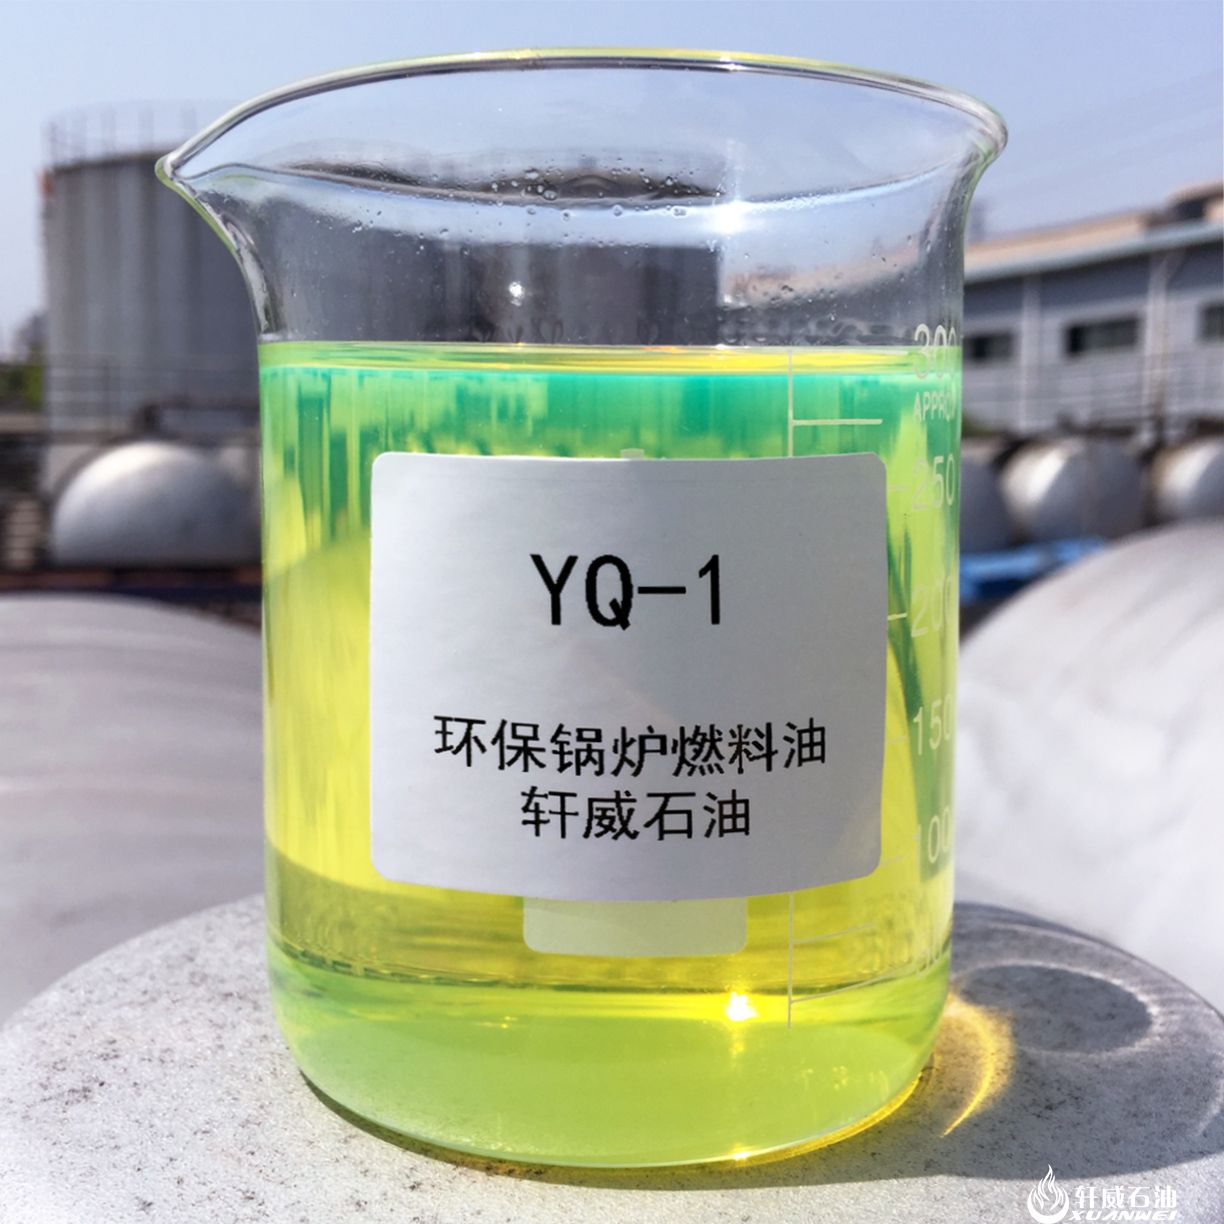 YQ-1轻质环保燃料油(国五)